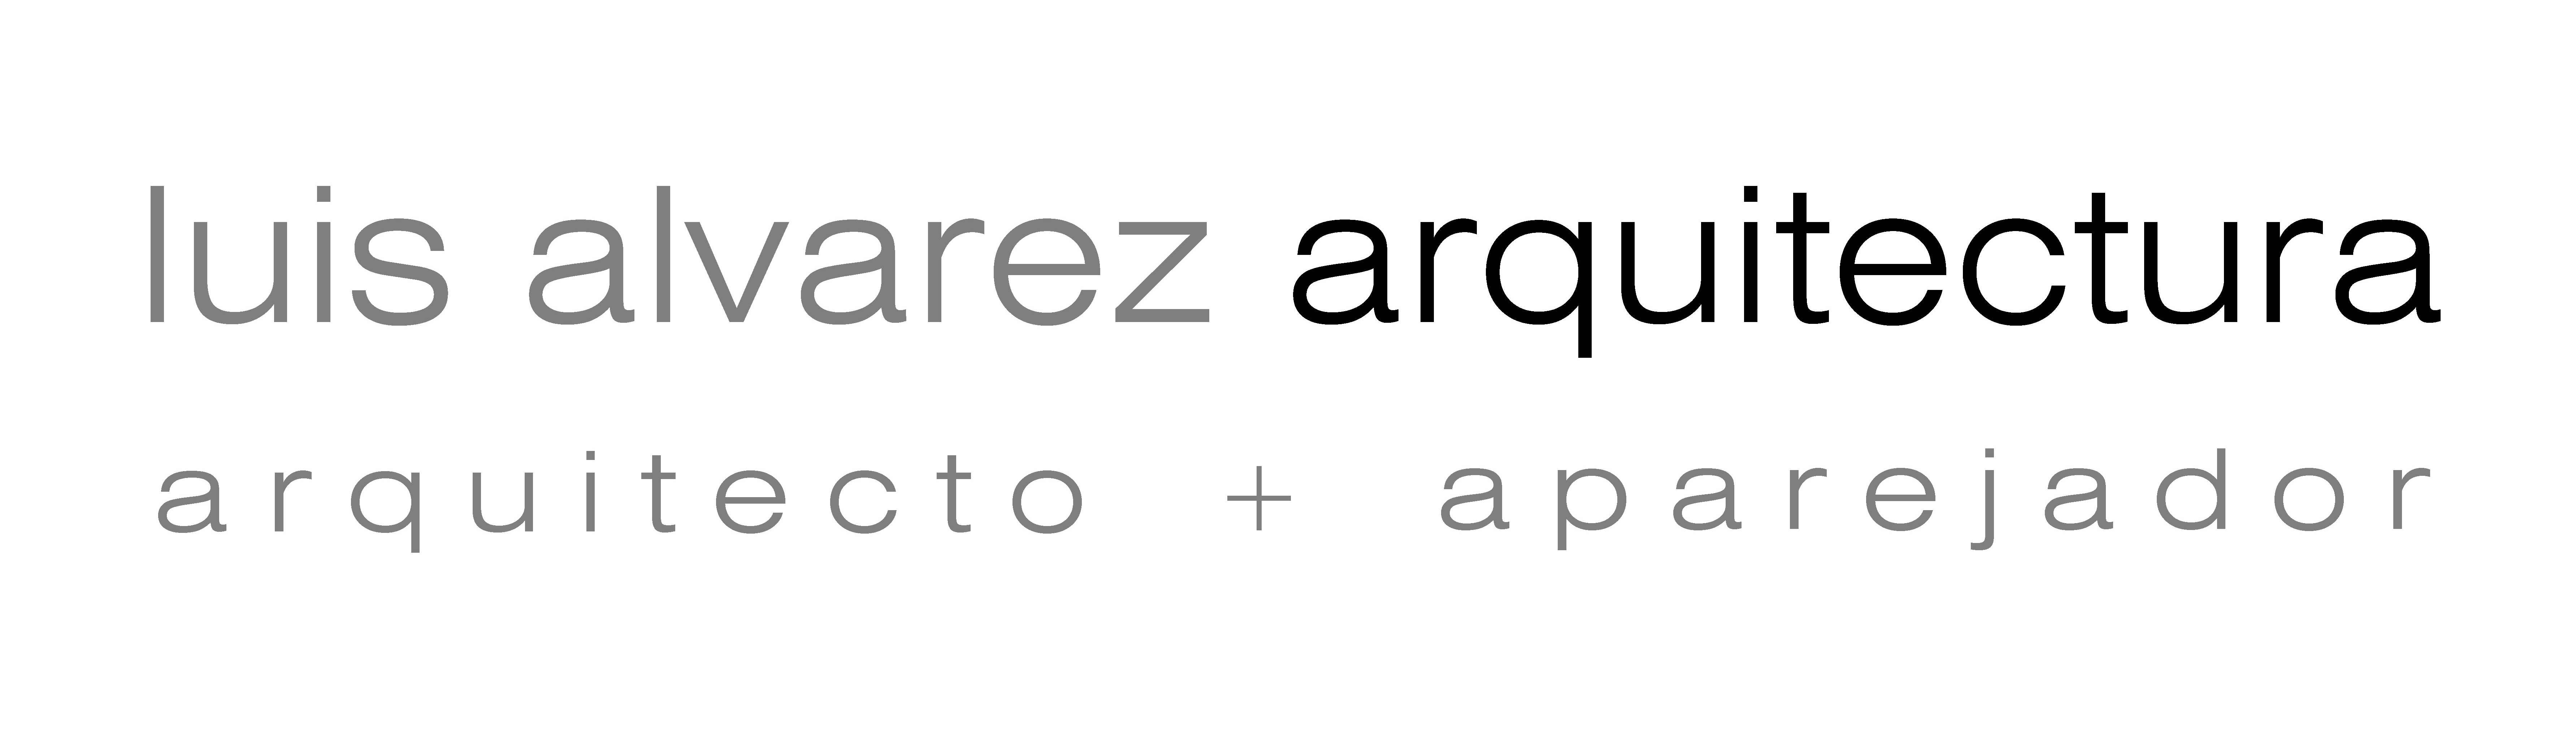 luis-alvarez-arquitectura-logo